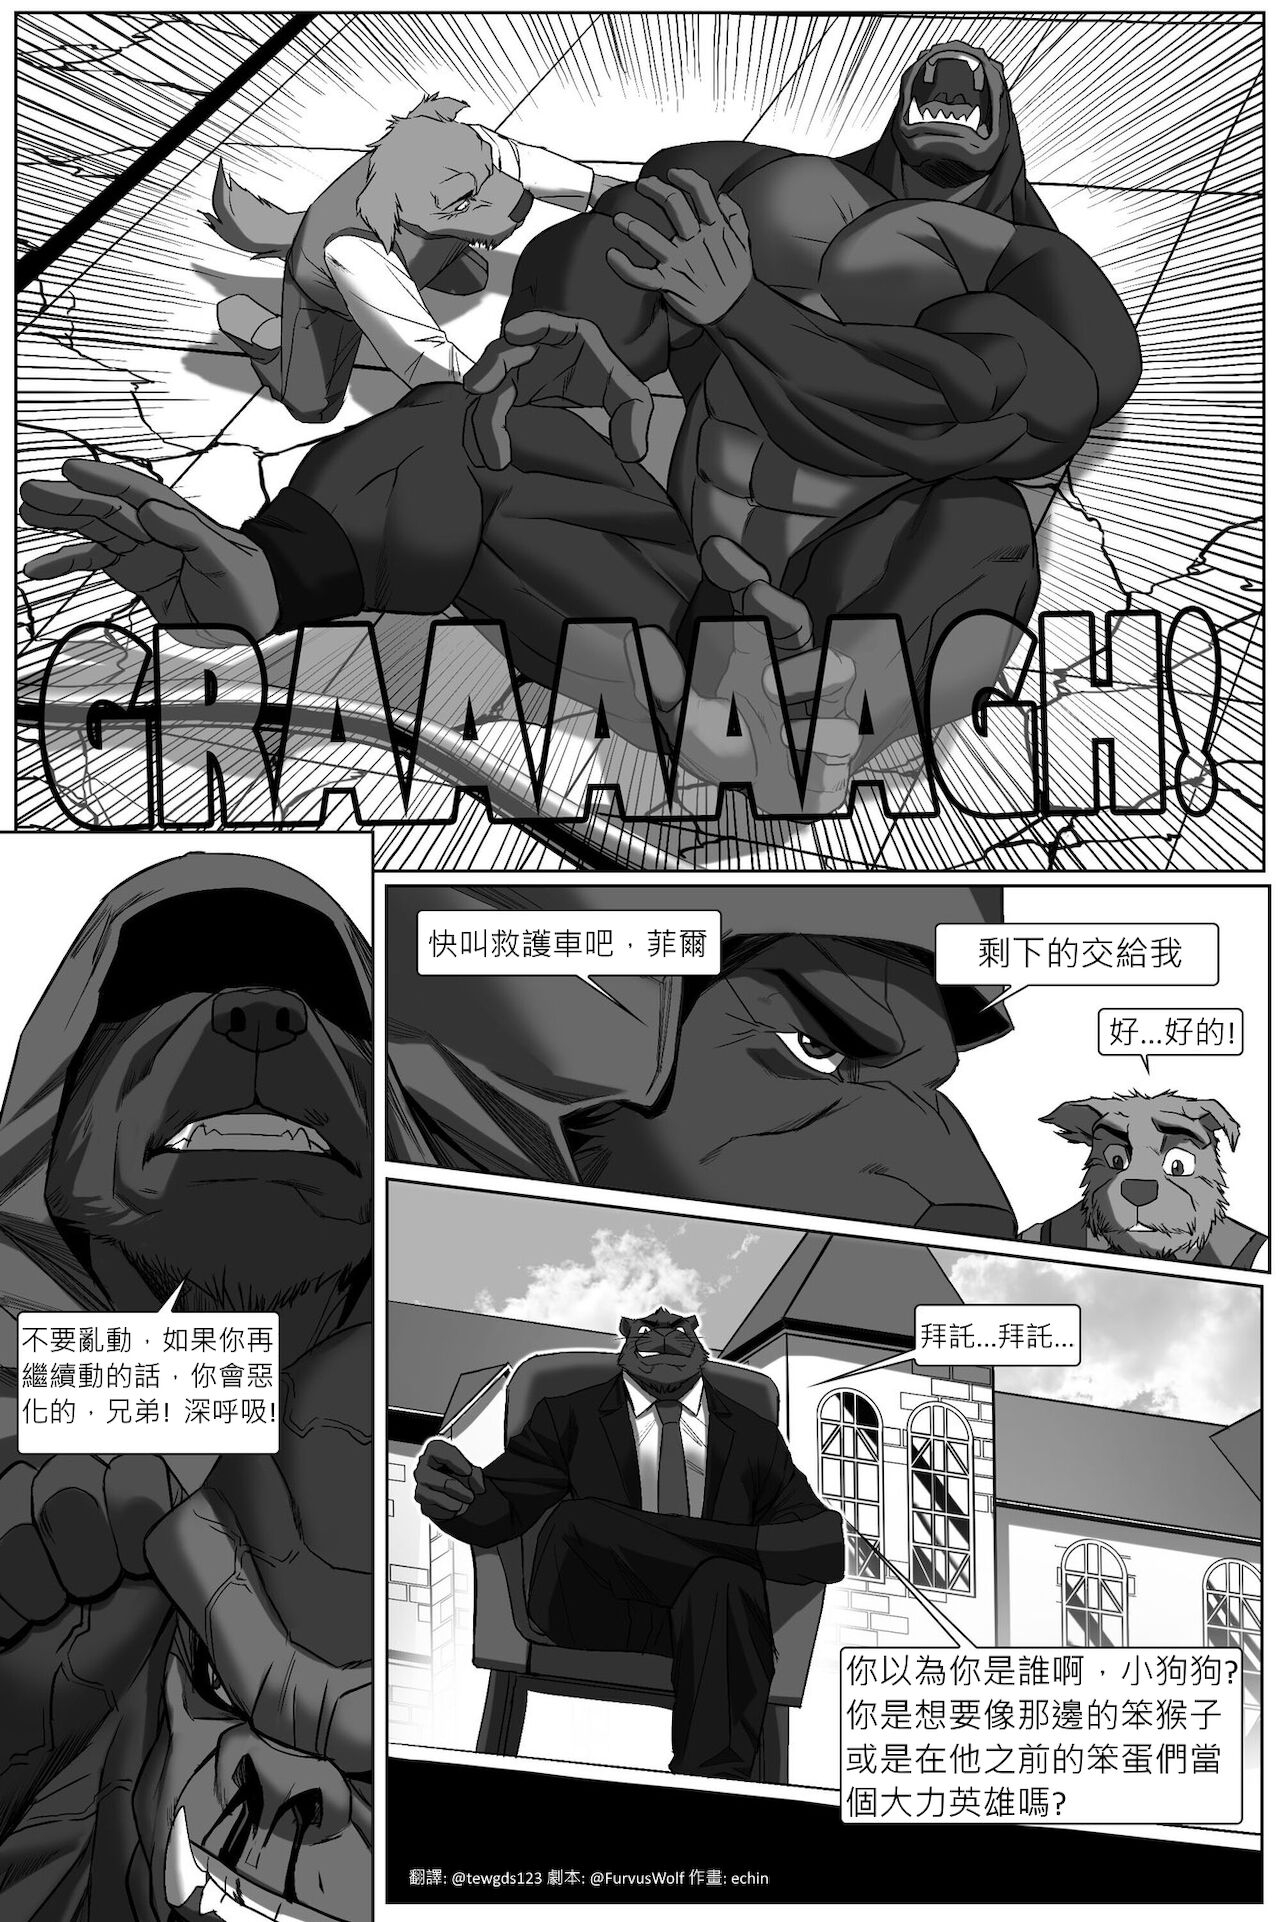 [echin][The Impossible Hulk Wolf][chinese] 6